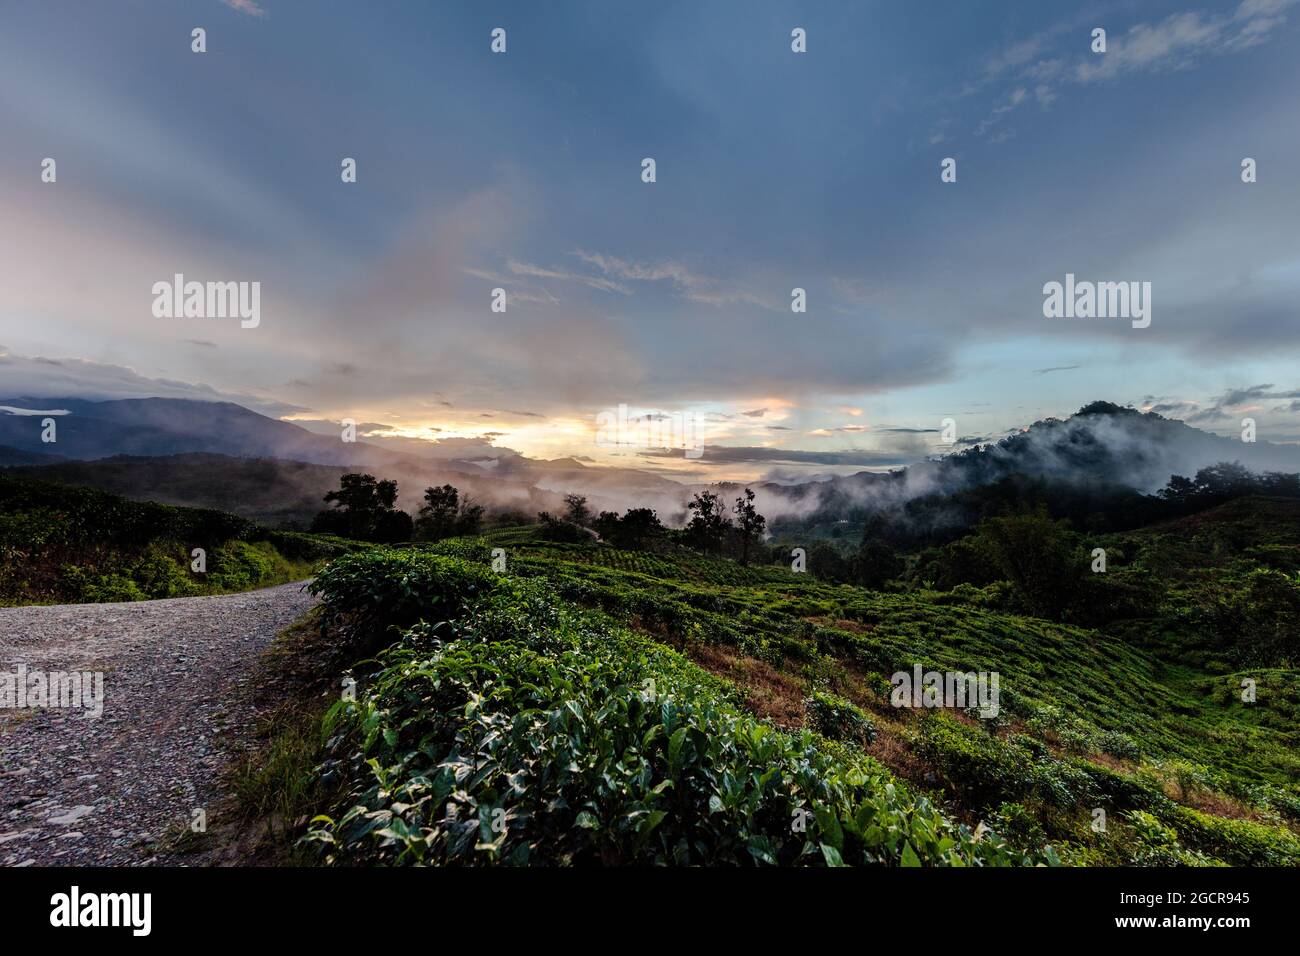 In attesa della notte, tramonto in una piantagione di tè a Sabah, Malesia, Borneo, Sabah, Malesia orientale. Nuvole colorate che si arrampicano sulle montagne. Foto Stock